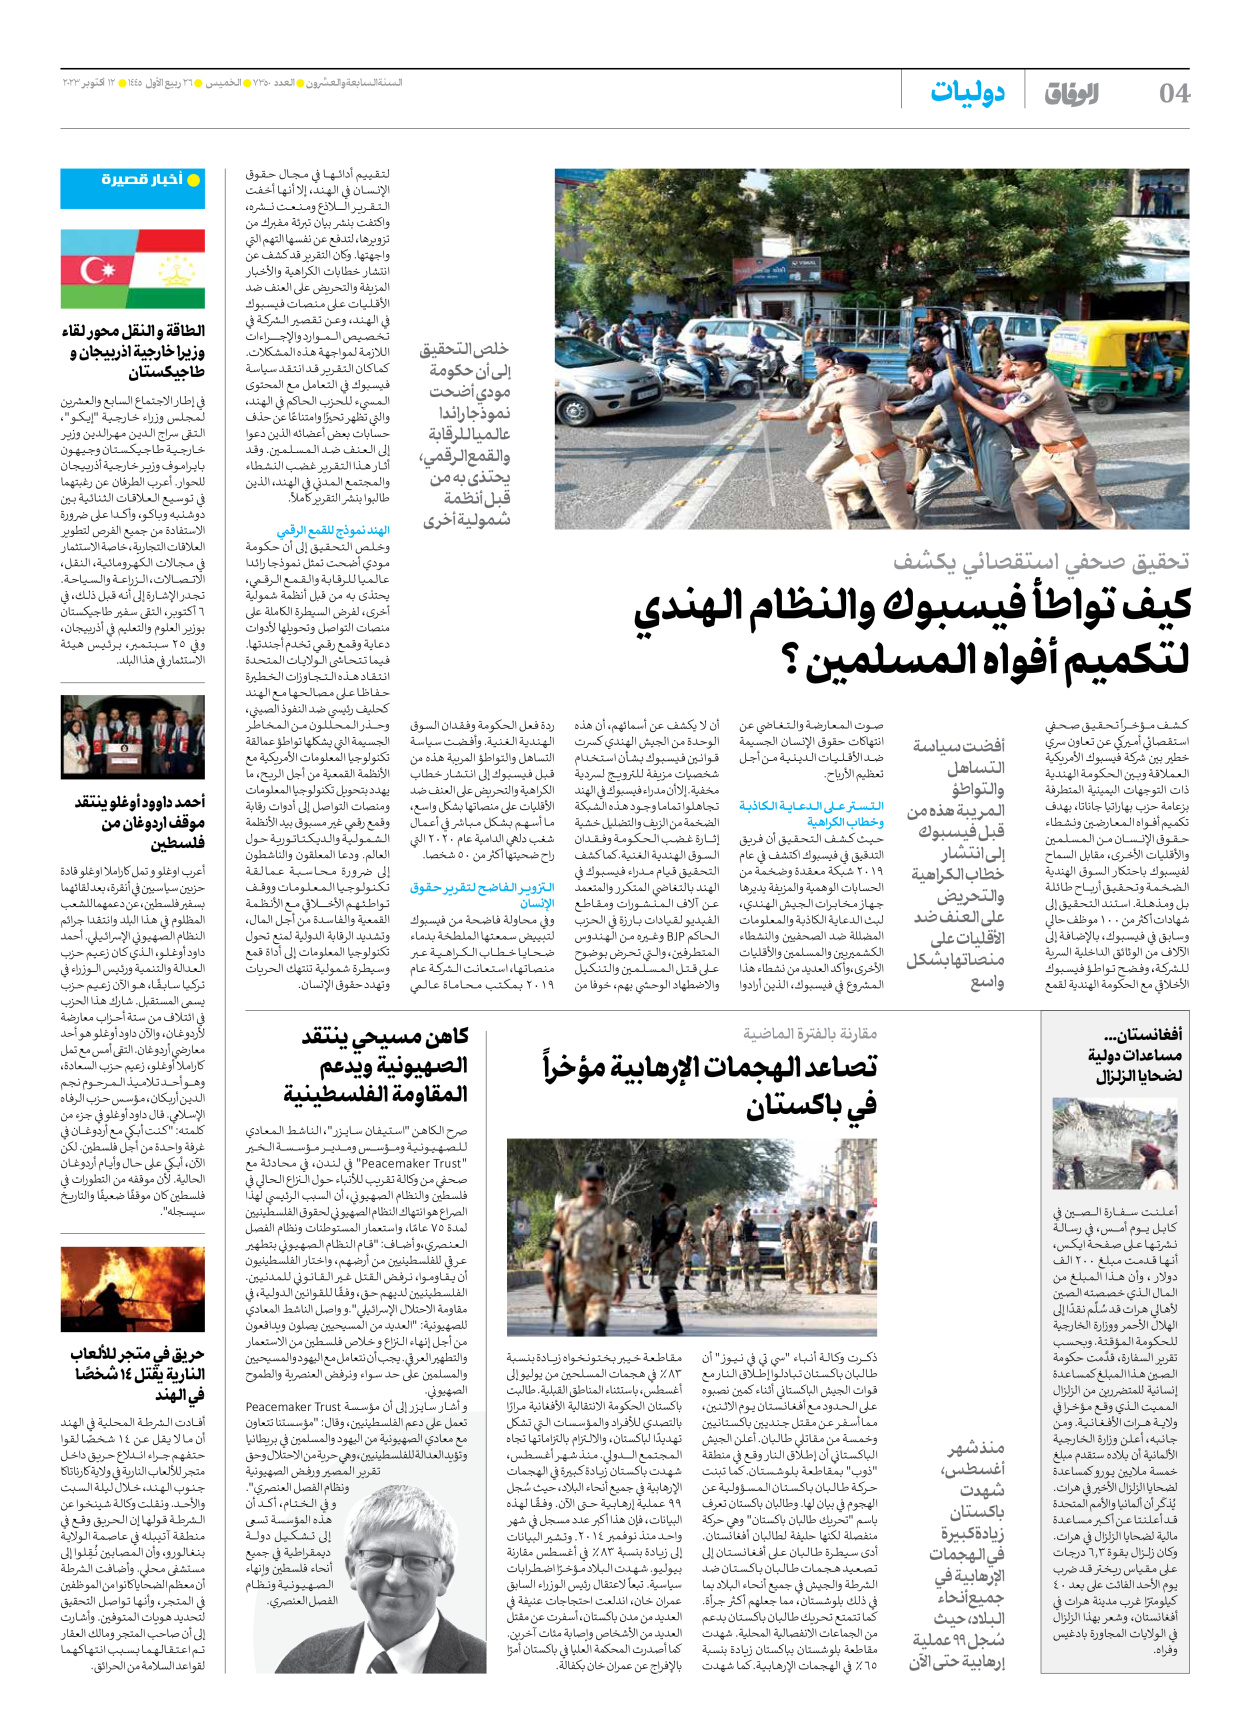 صحیفة ایران الدولیة الوفاق - العدد سبعة آلاف وثلاثمائة وخمسون - ١٢ أكتوبر ٢٠٢٣ - الصفحة ٤